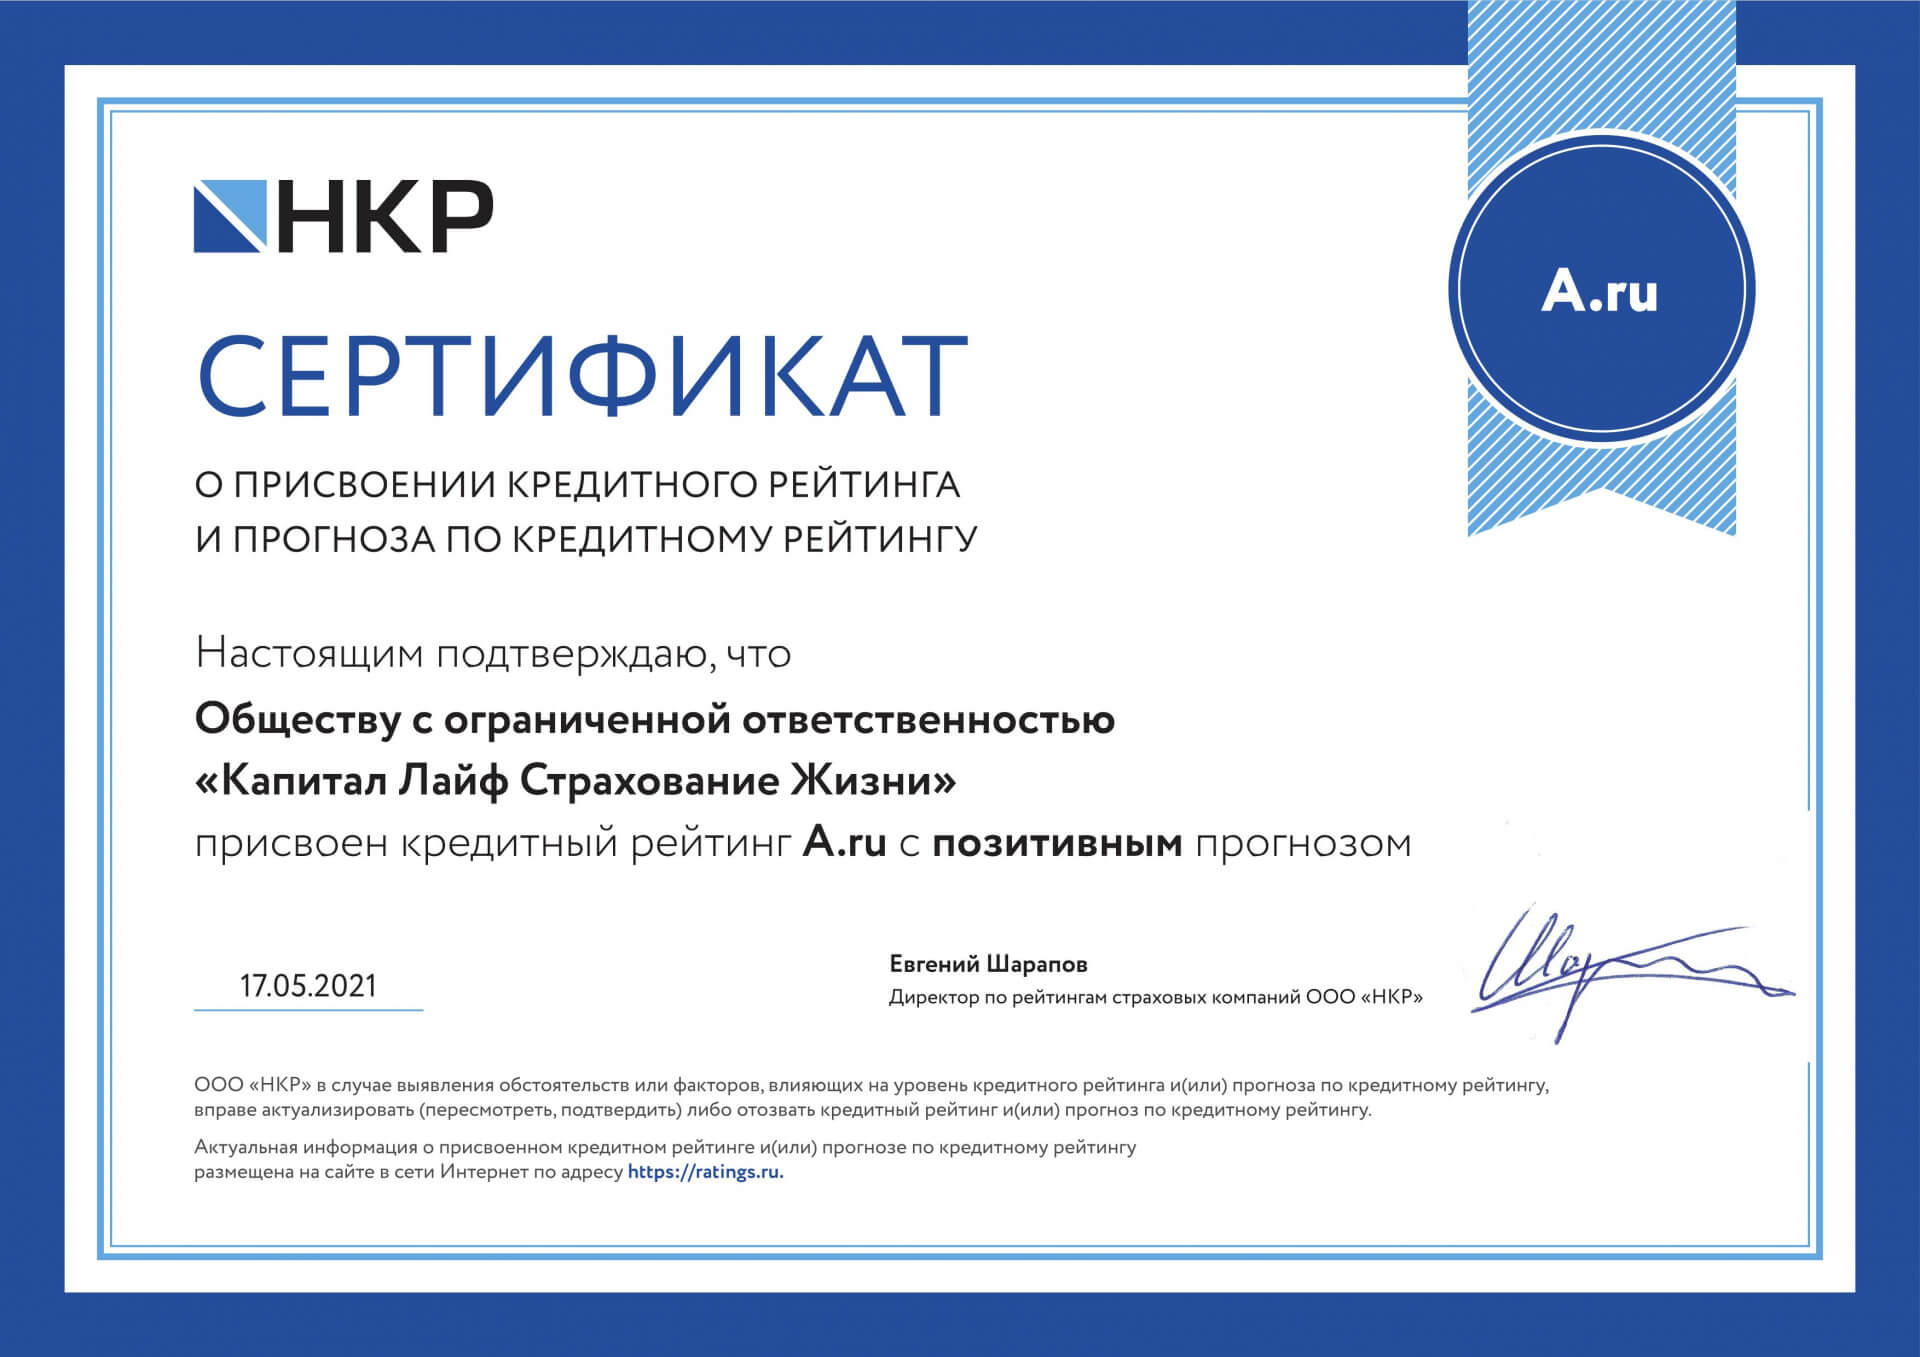 Кредитный рейтинг страховой компании КАПИТАЛ LIFE на уровне A.ru